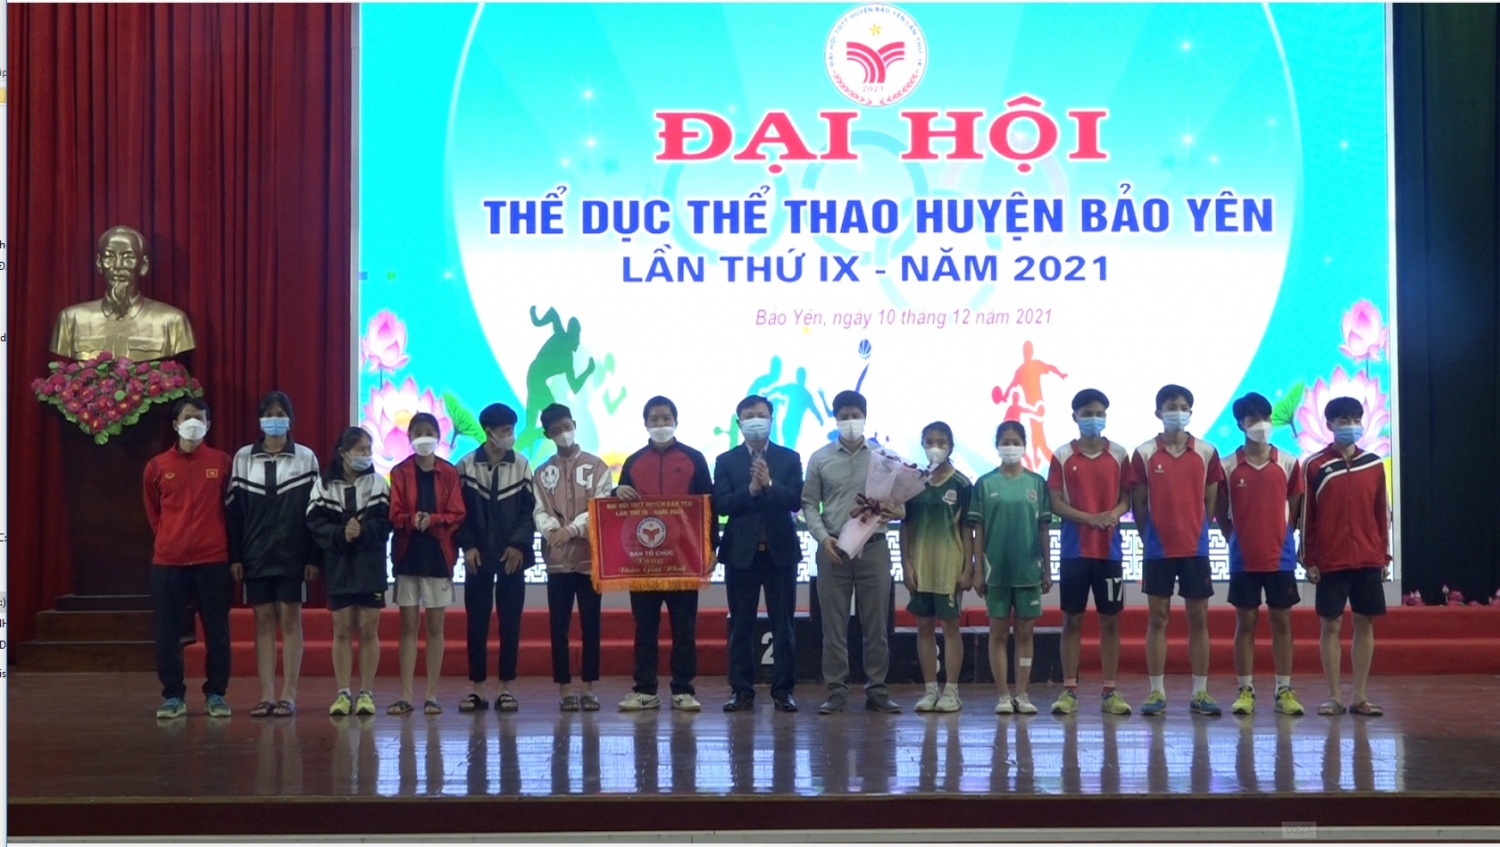 Đồng chí Nguyễn Anh Dũng Phó Chủ tịch UBND huyện Trao giải nhất toàn đoàn cho trường THPT số 2 Bảo Yên